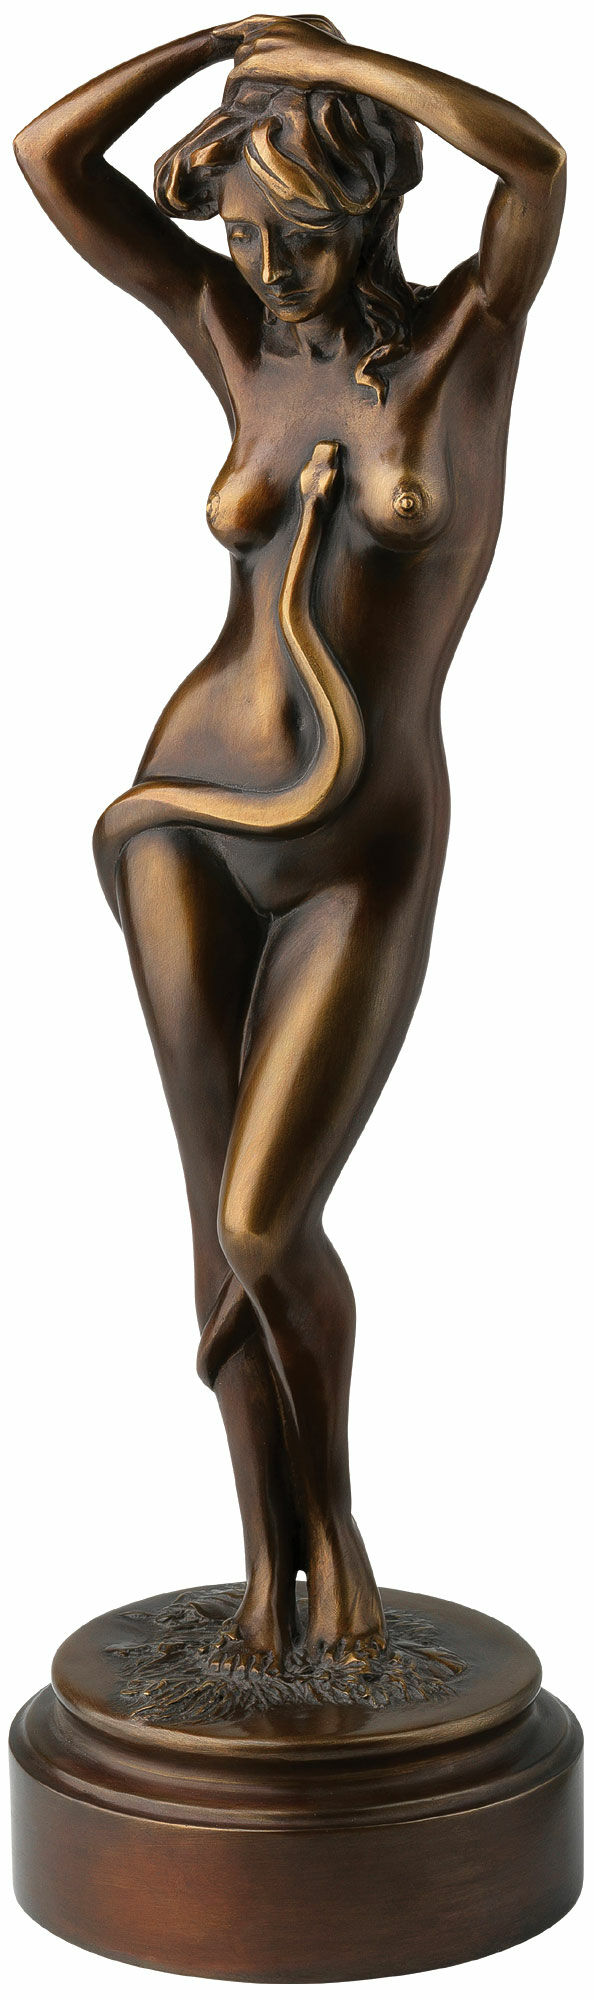 Sculpture "Eva", bronze version by Thomas Schöne